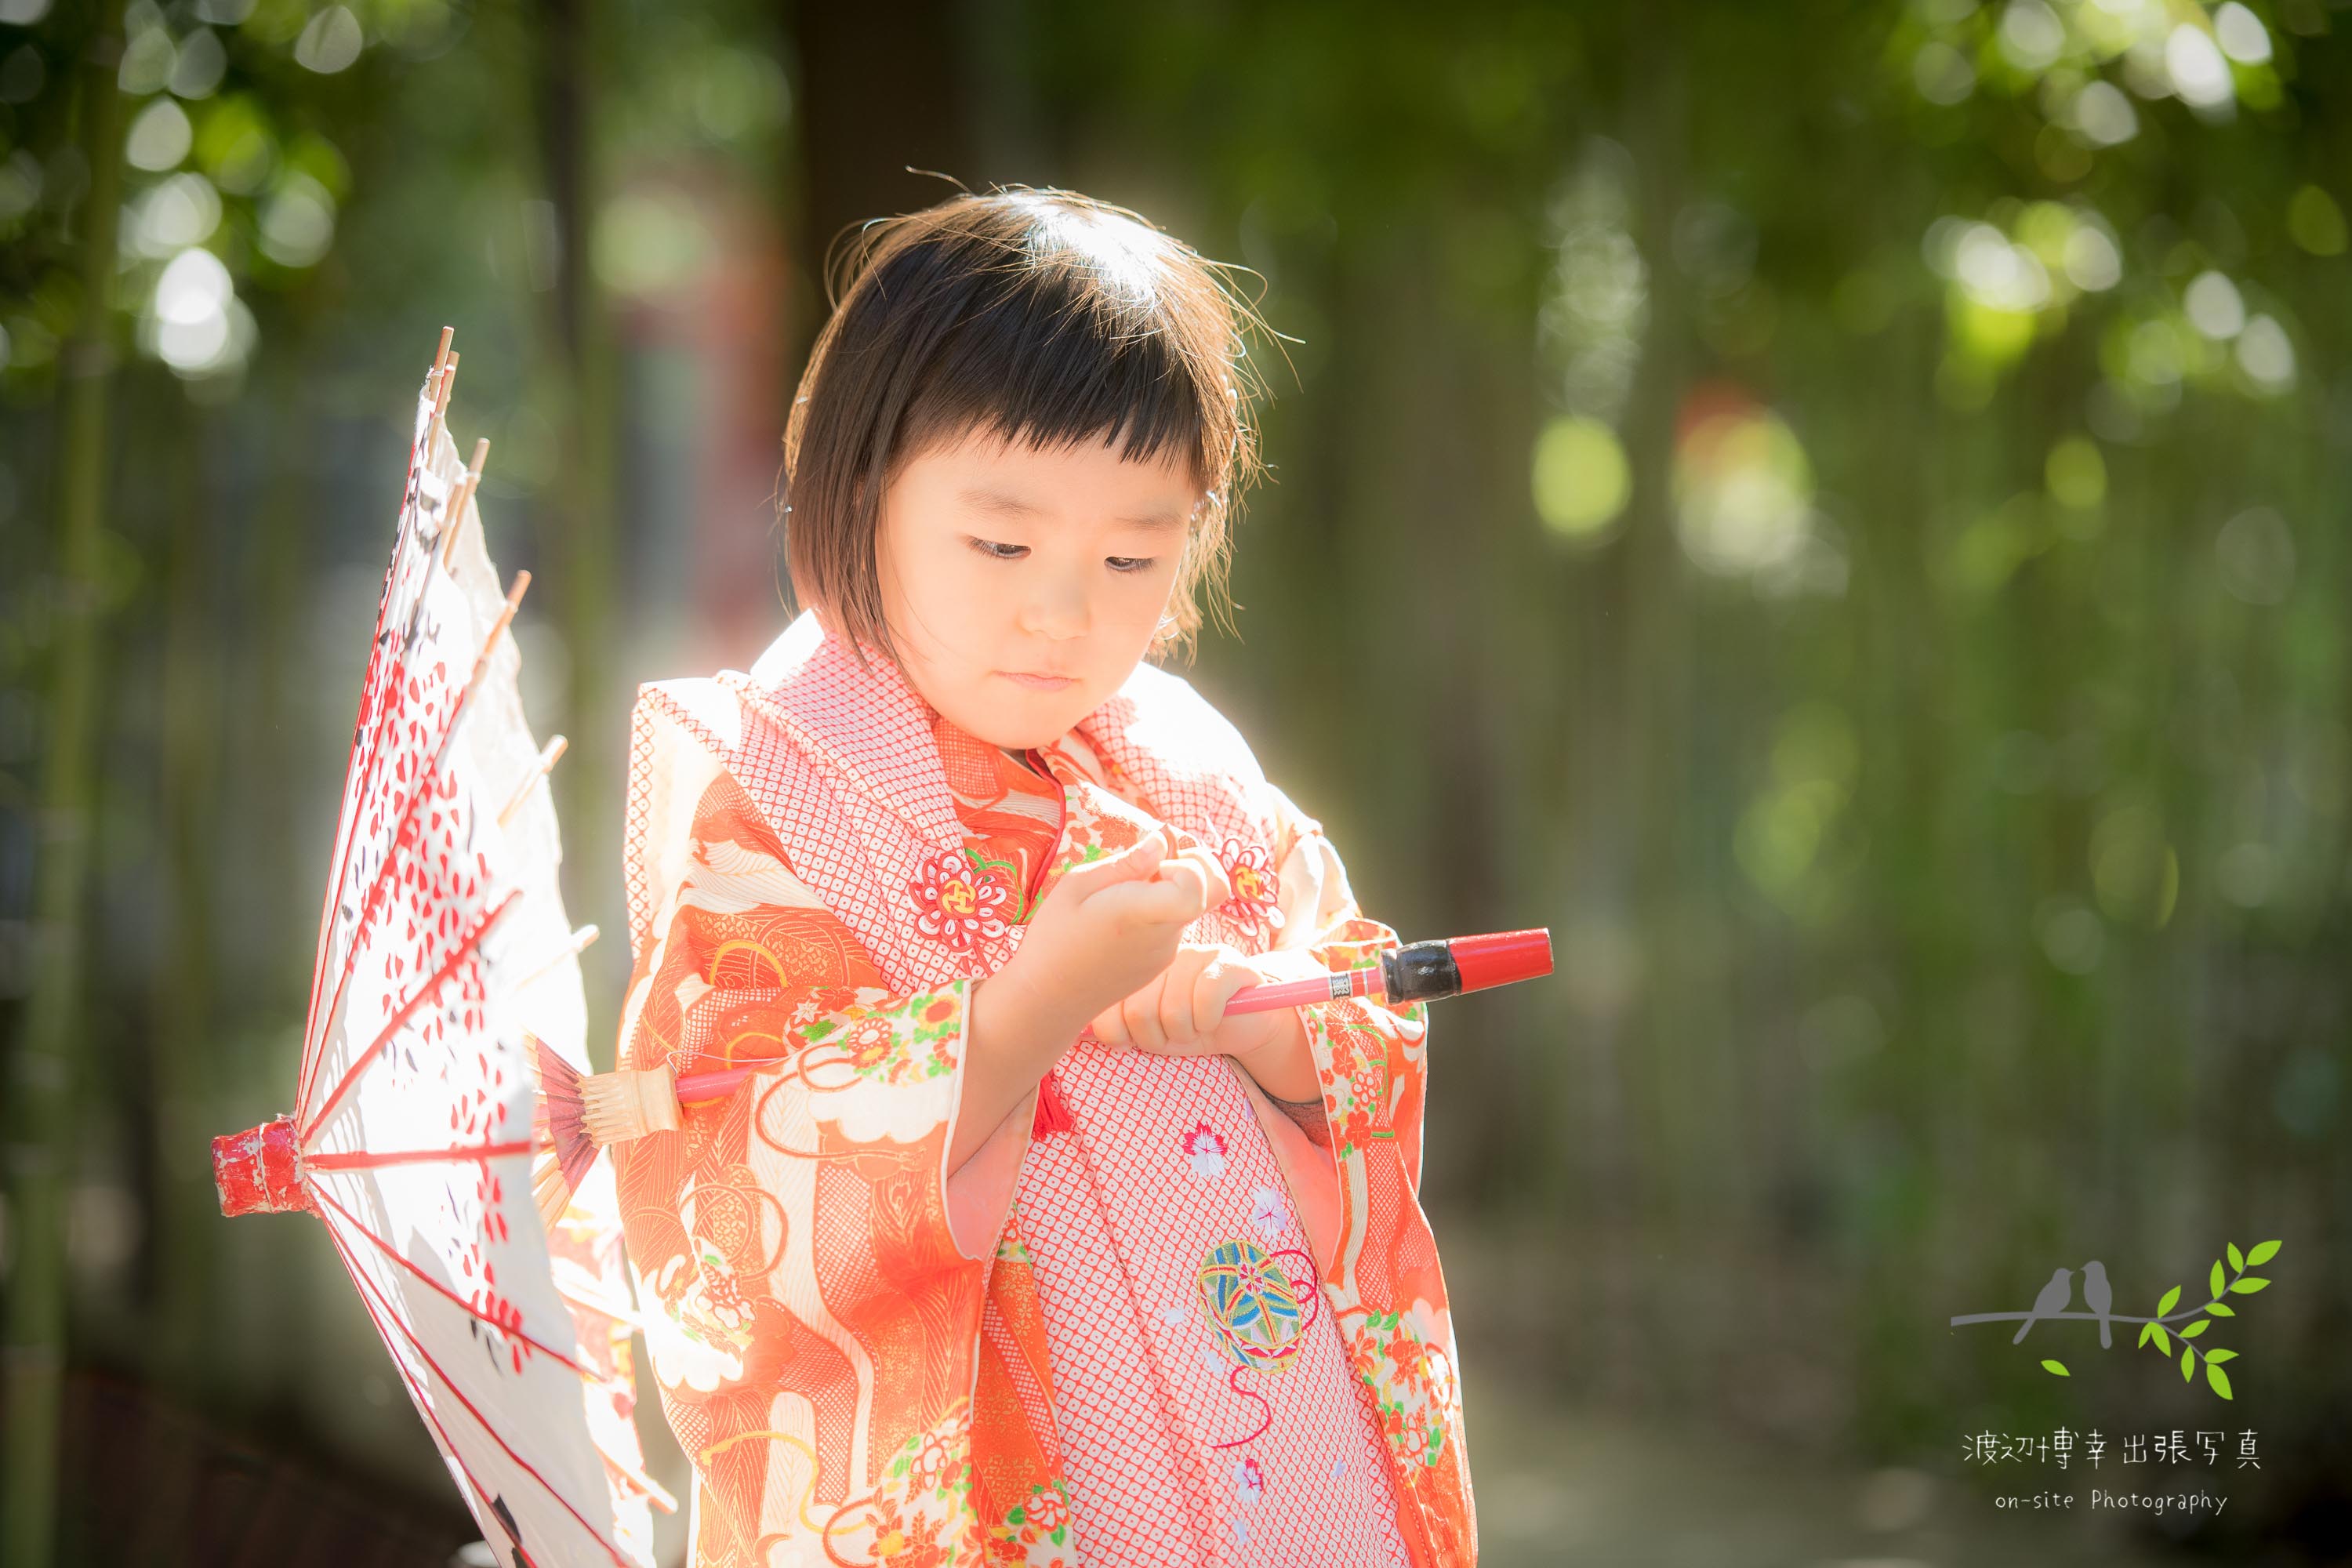 和傘をさして立つオレンジ色の着物姿の小さな女の子